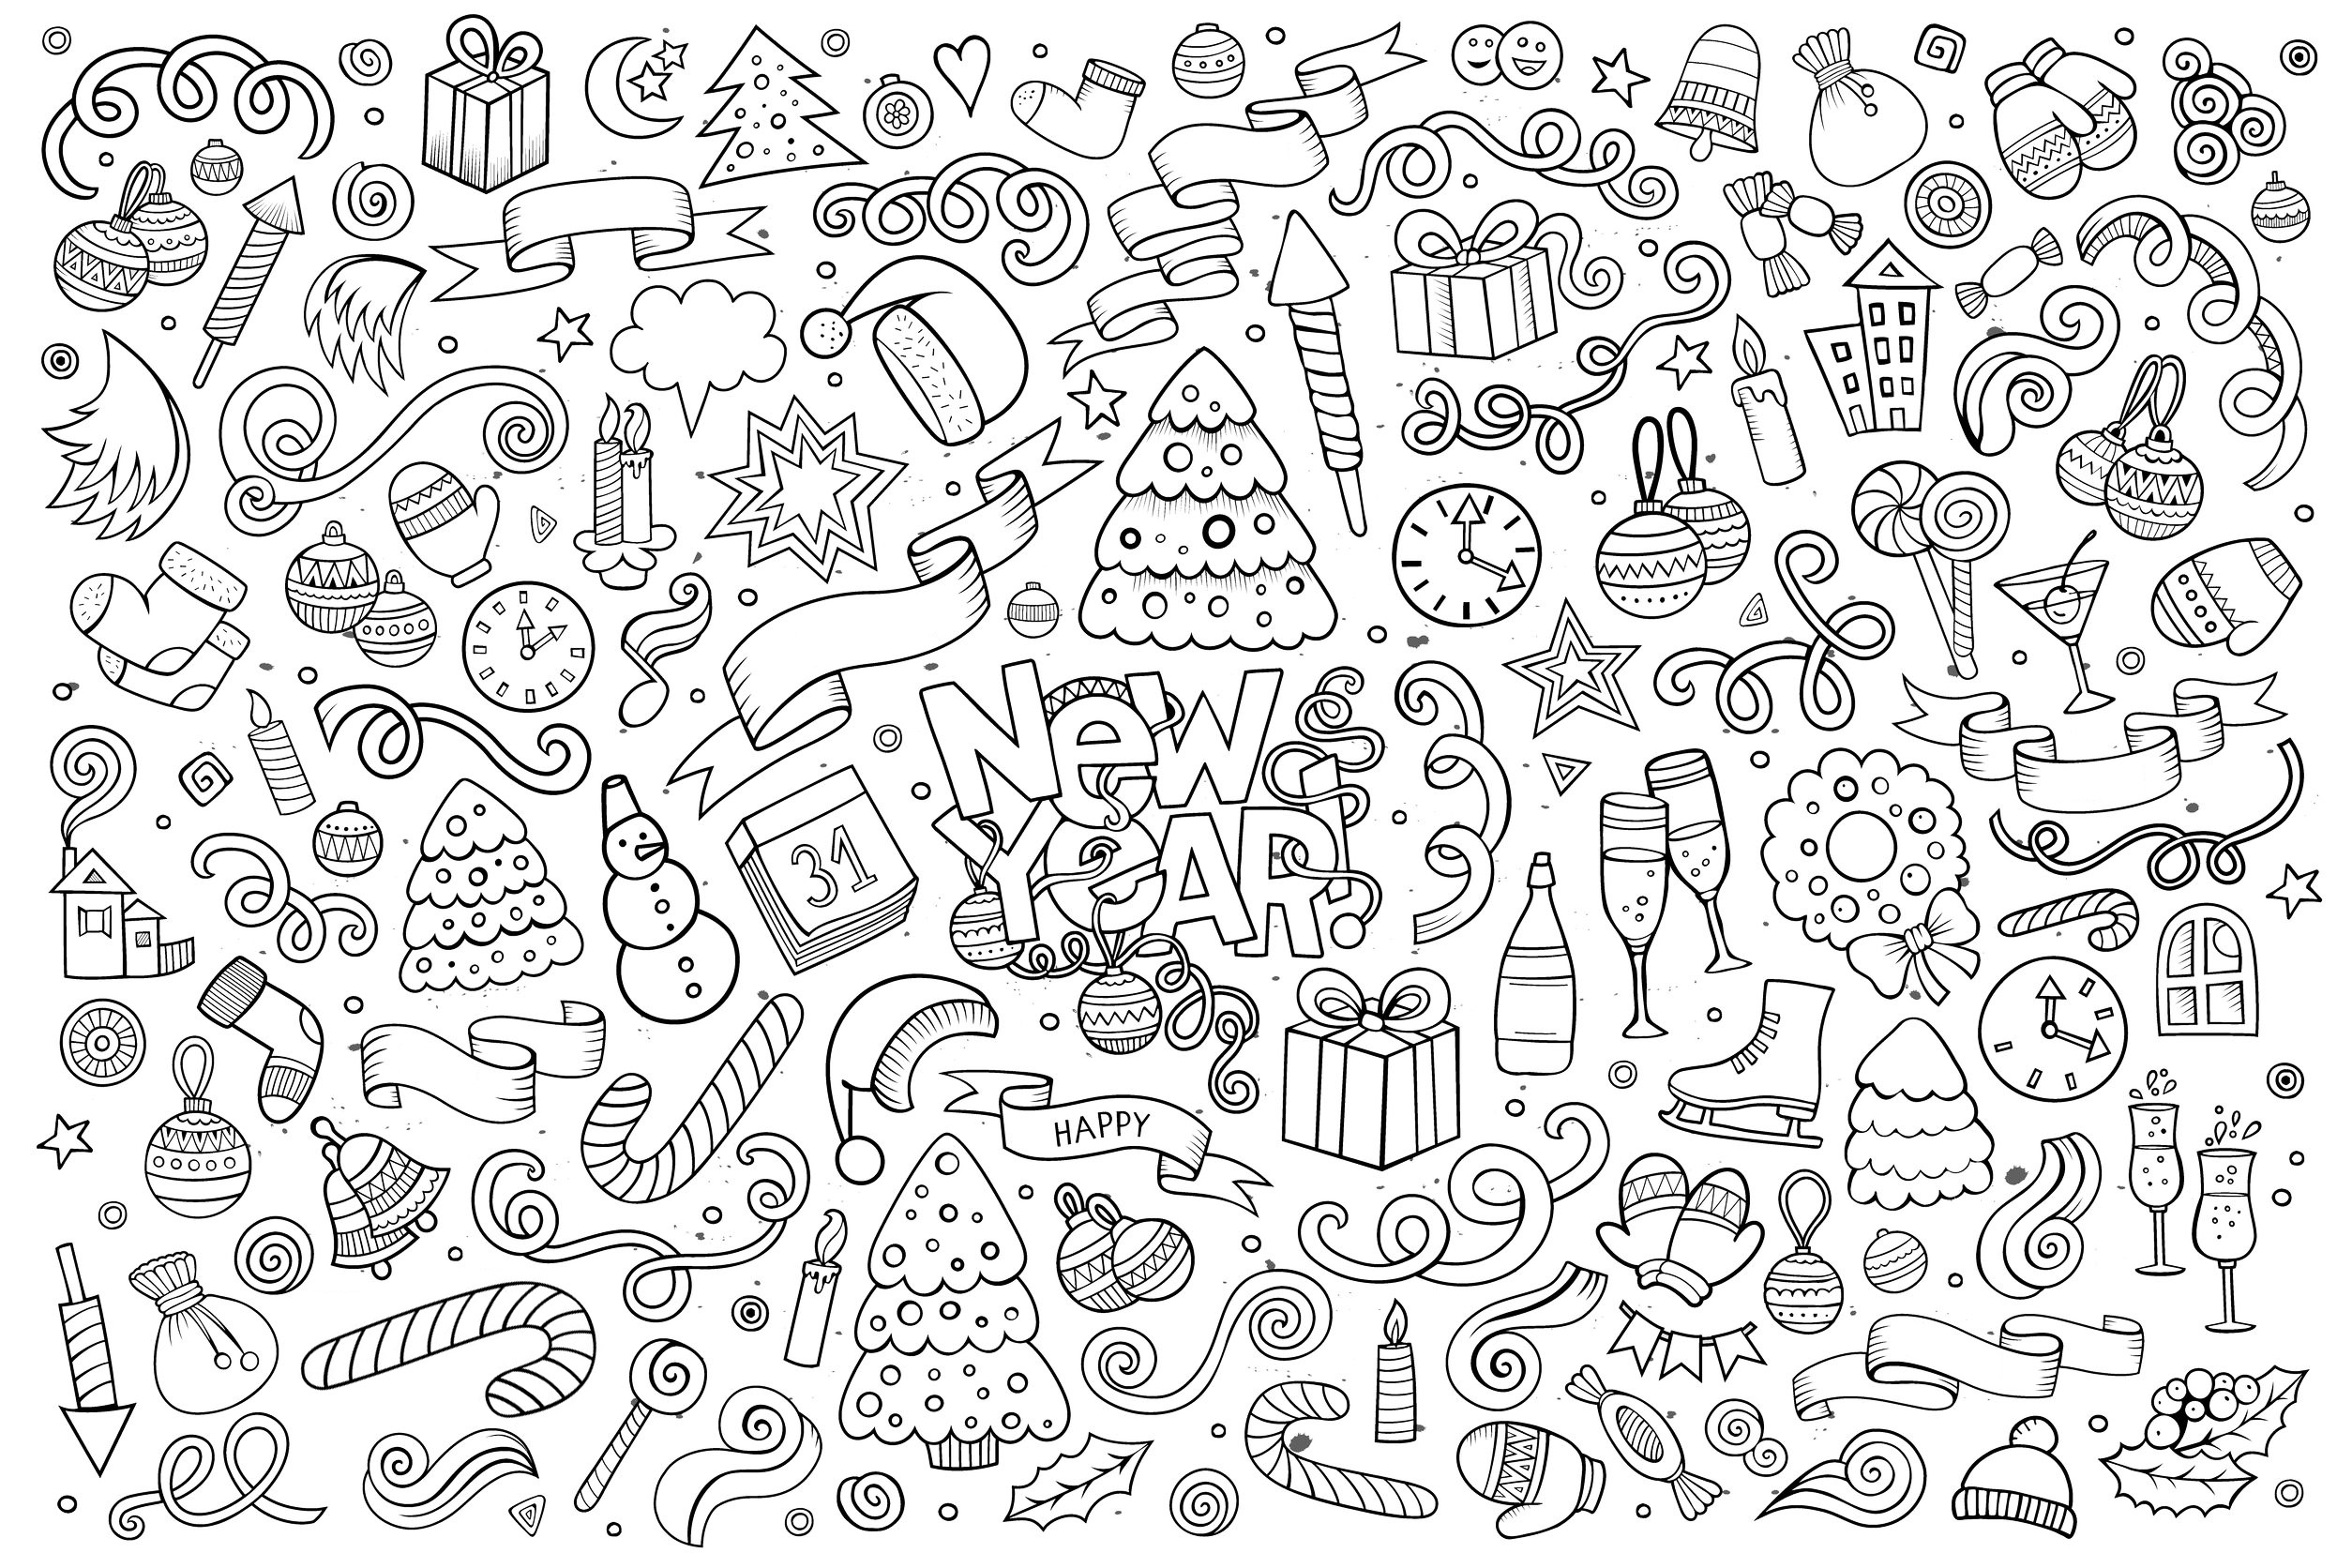 Scarabocchio da colorare 'Happy New Year', con disegni intricati. Numerosi oggetti e motivi legati al tema del Capodanno